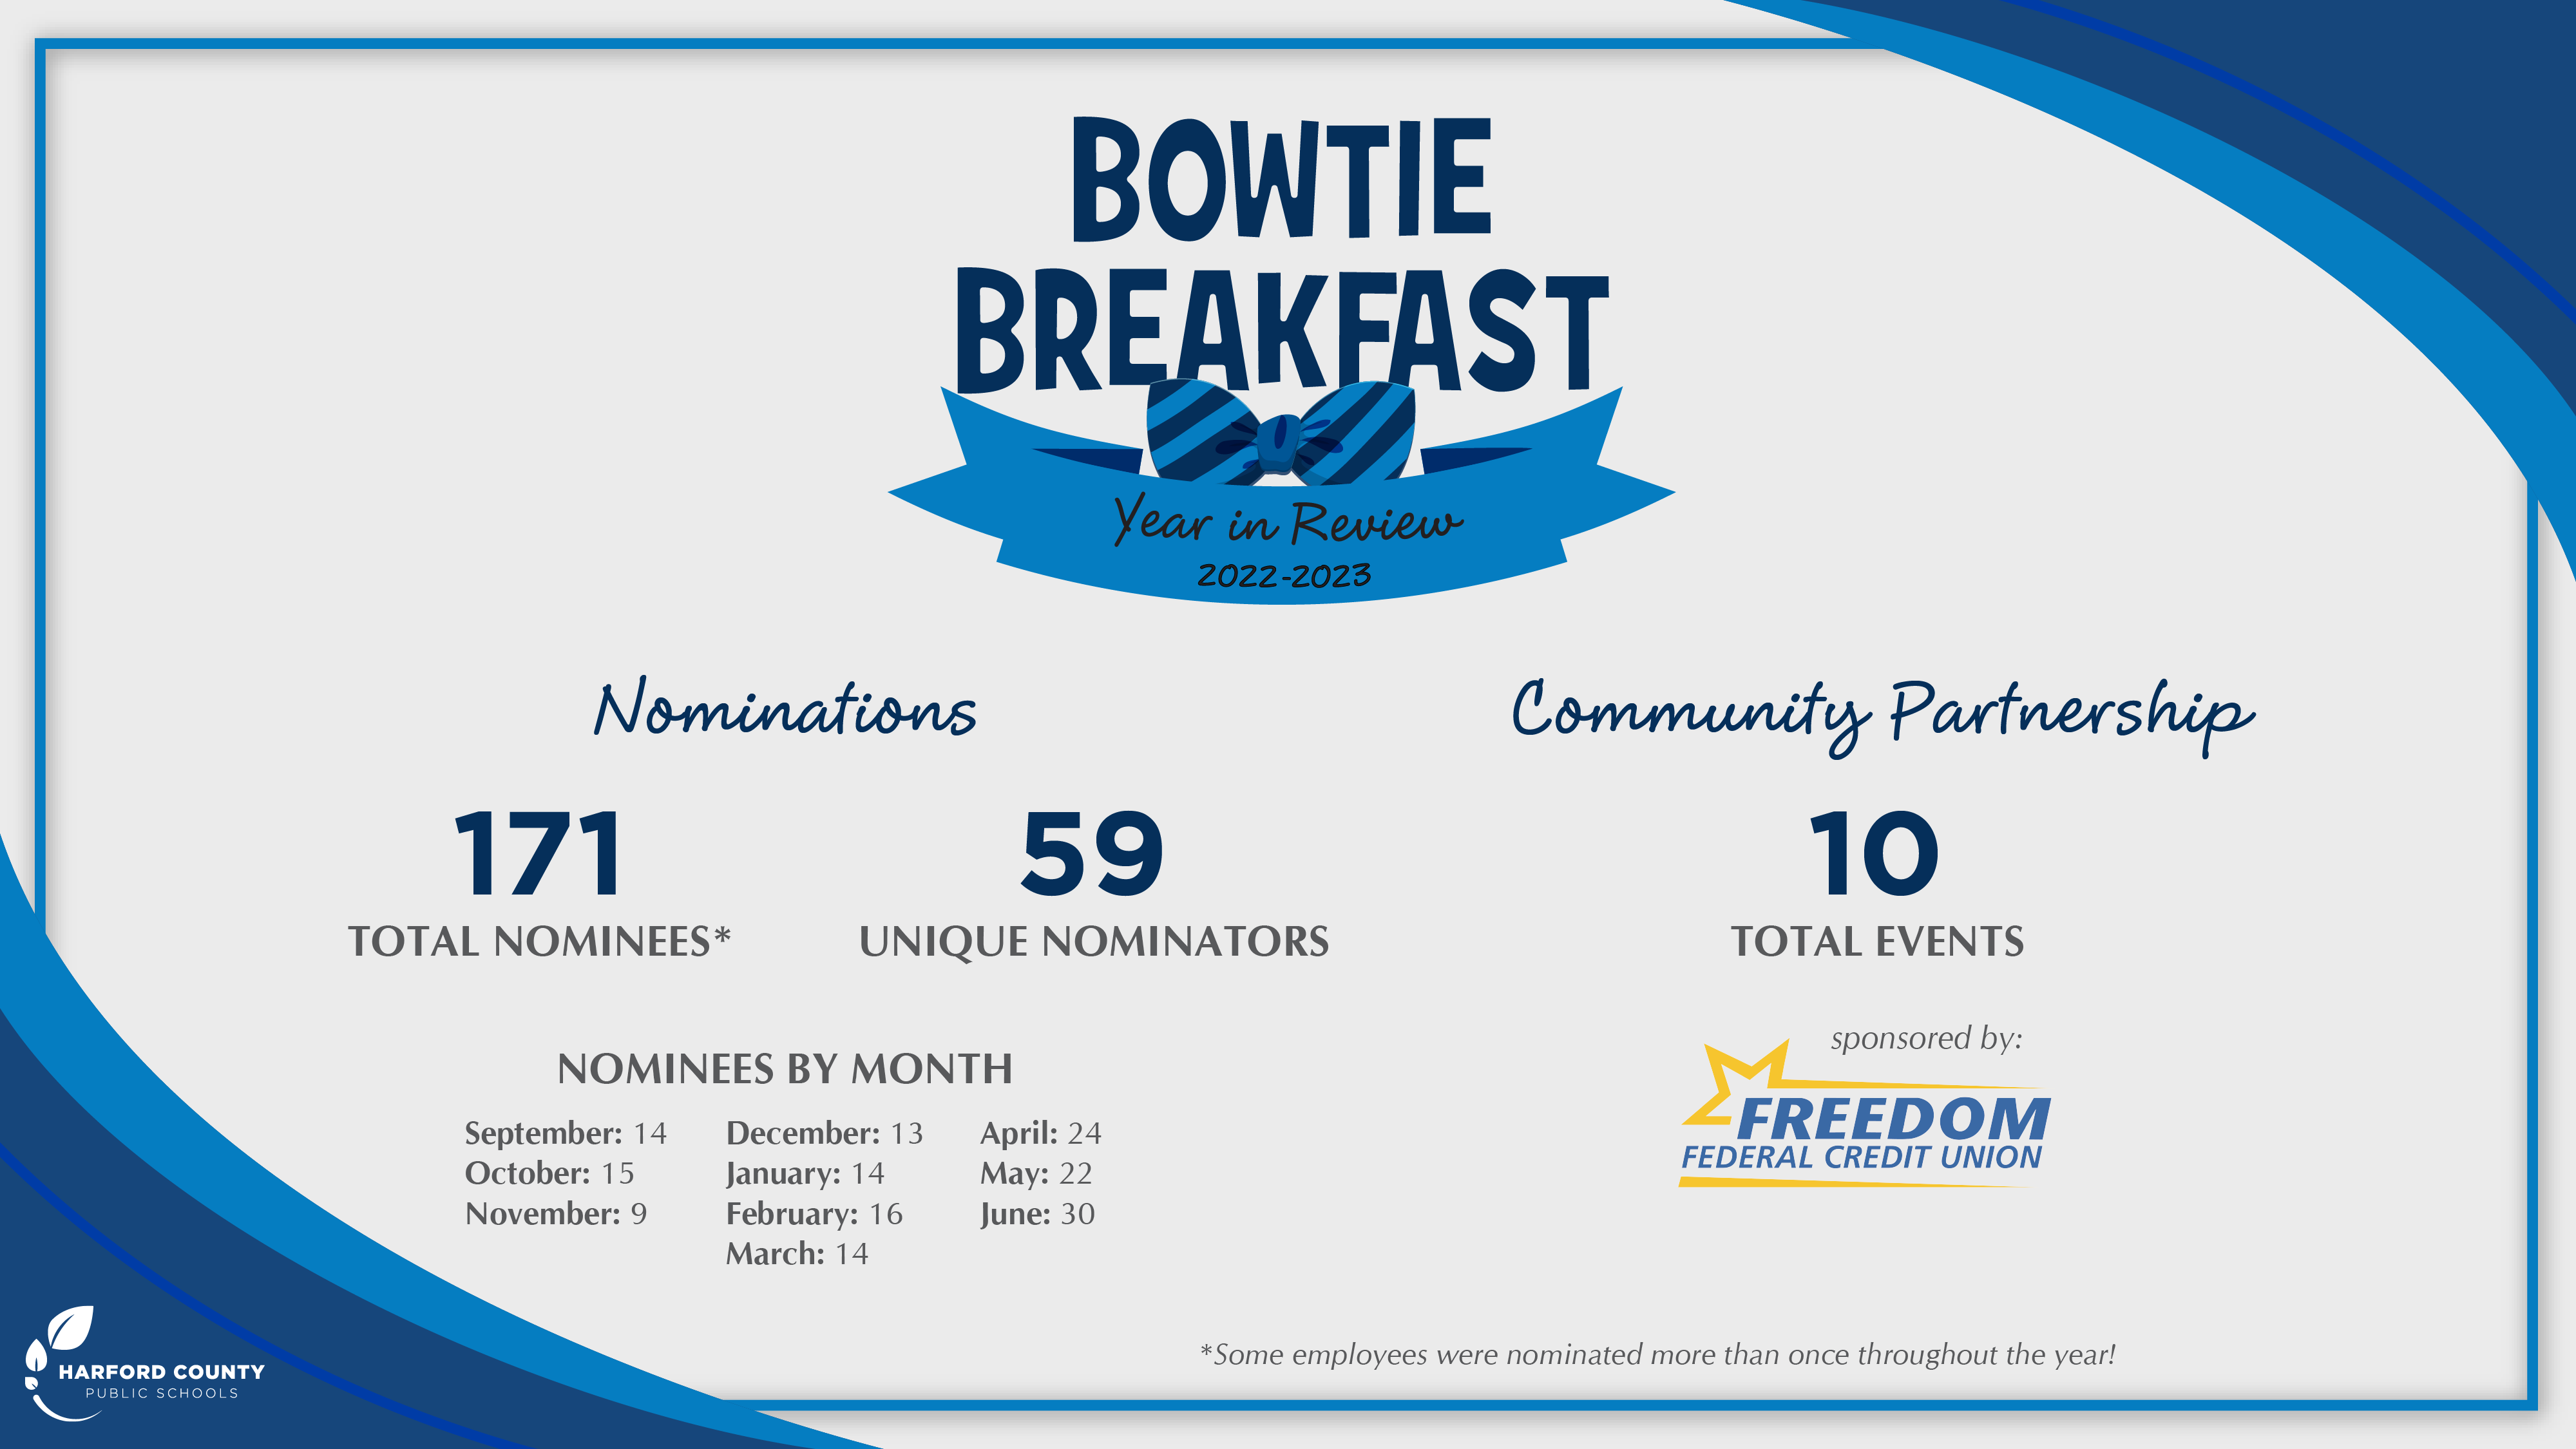 HCPS Bowtie Breakfast Honorees - June 2023